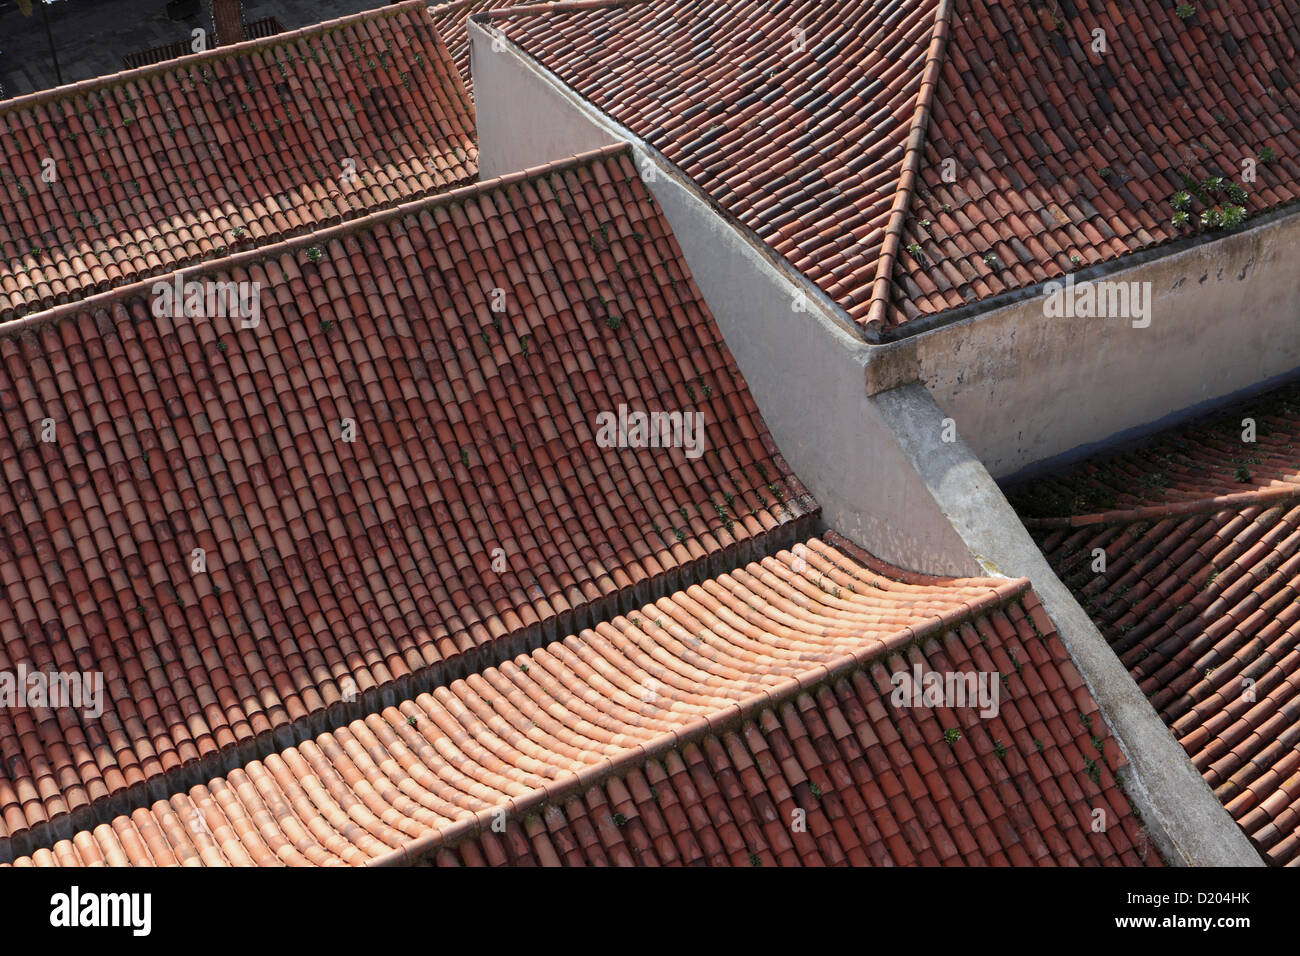 Vue de dessus de toit montrant la texture et couleur de vieux meubles anciens des tuiles en terre cuite, La Laguna, Tenerife. Banque D'Images